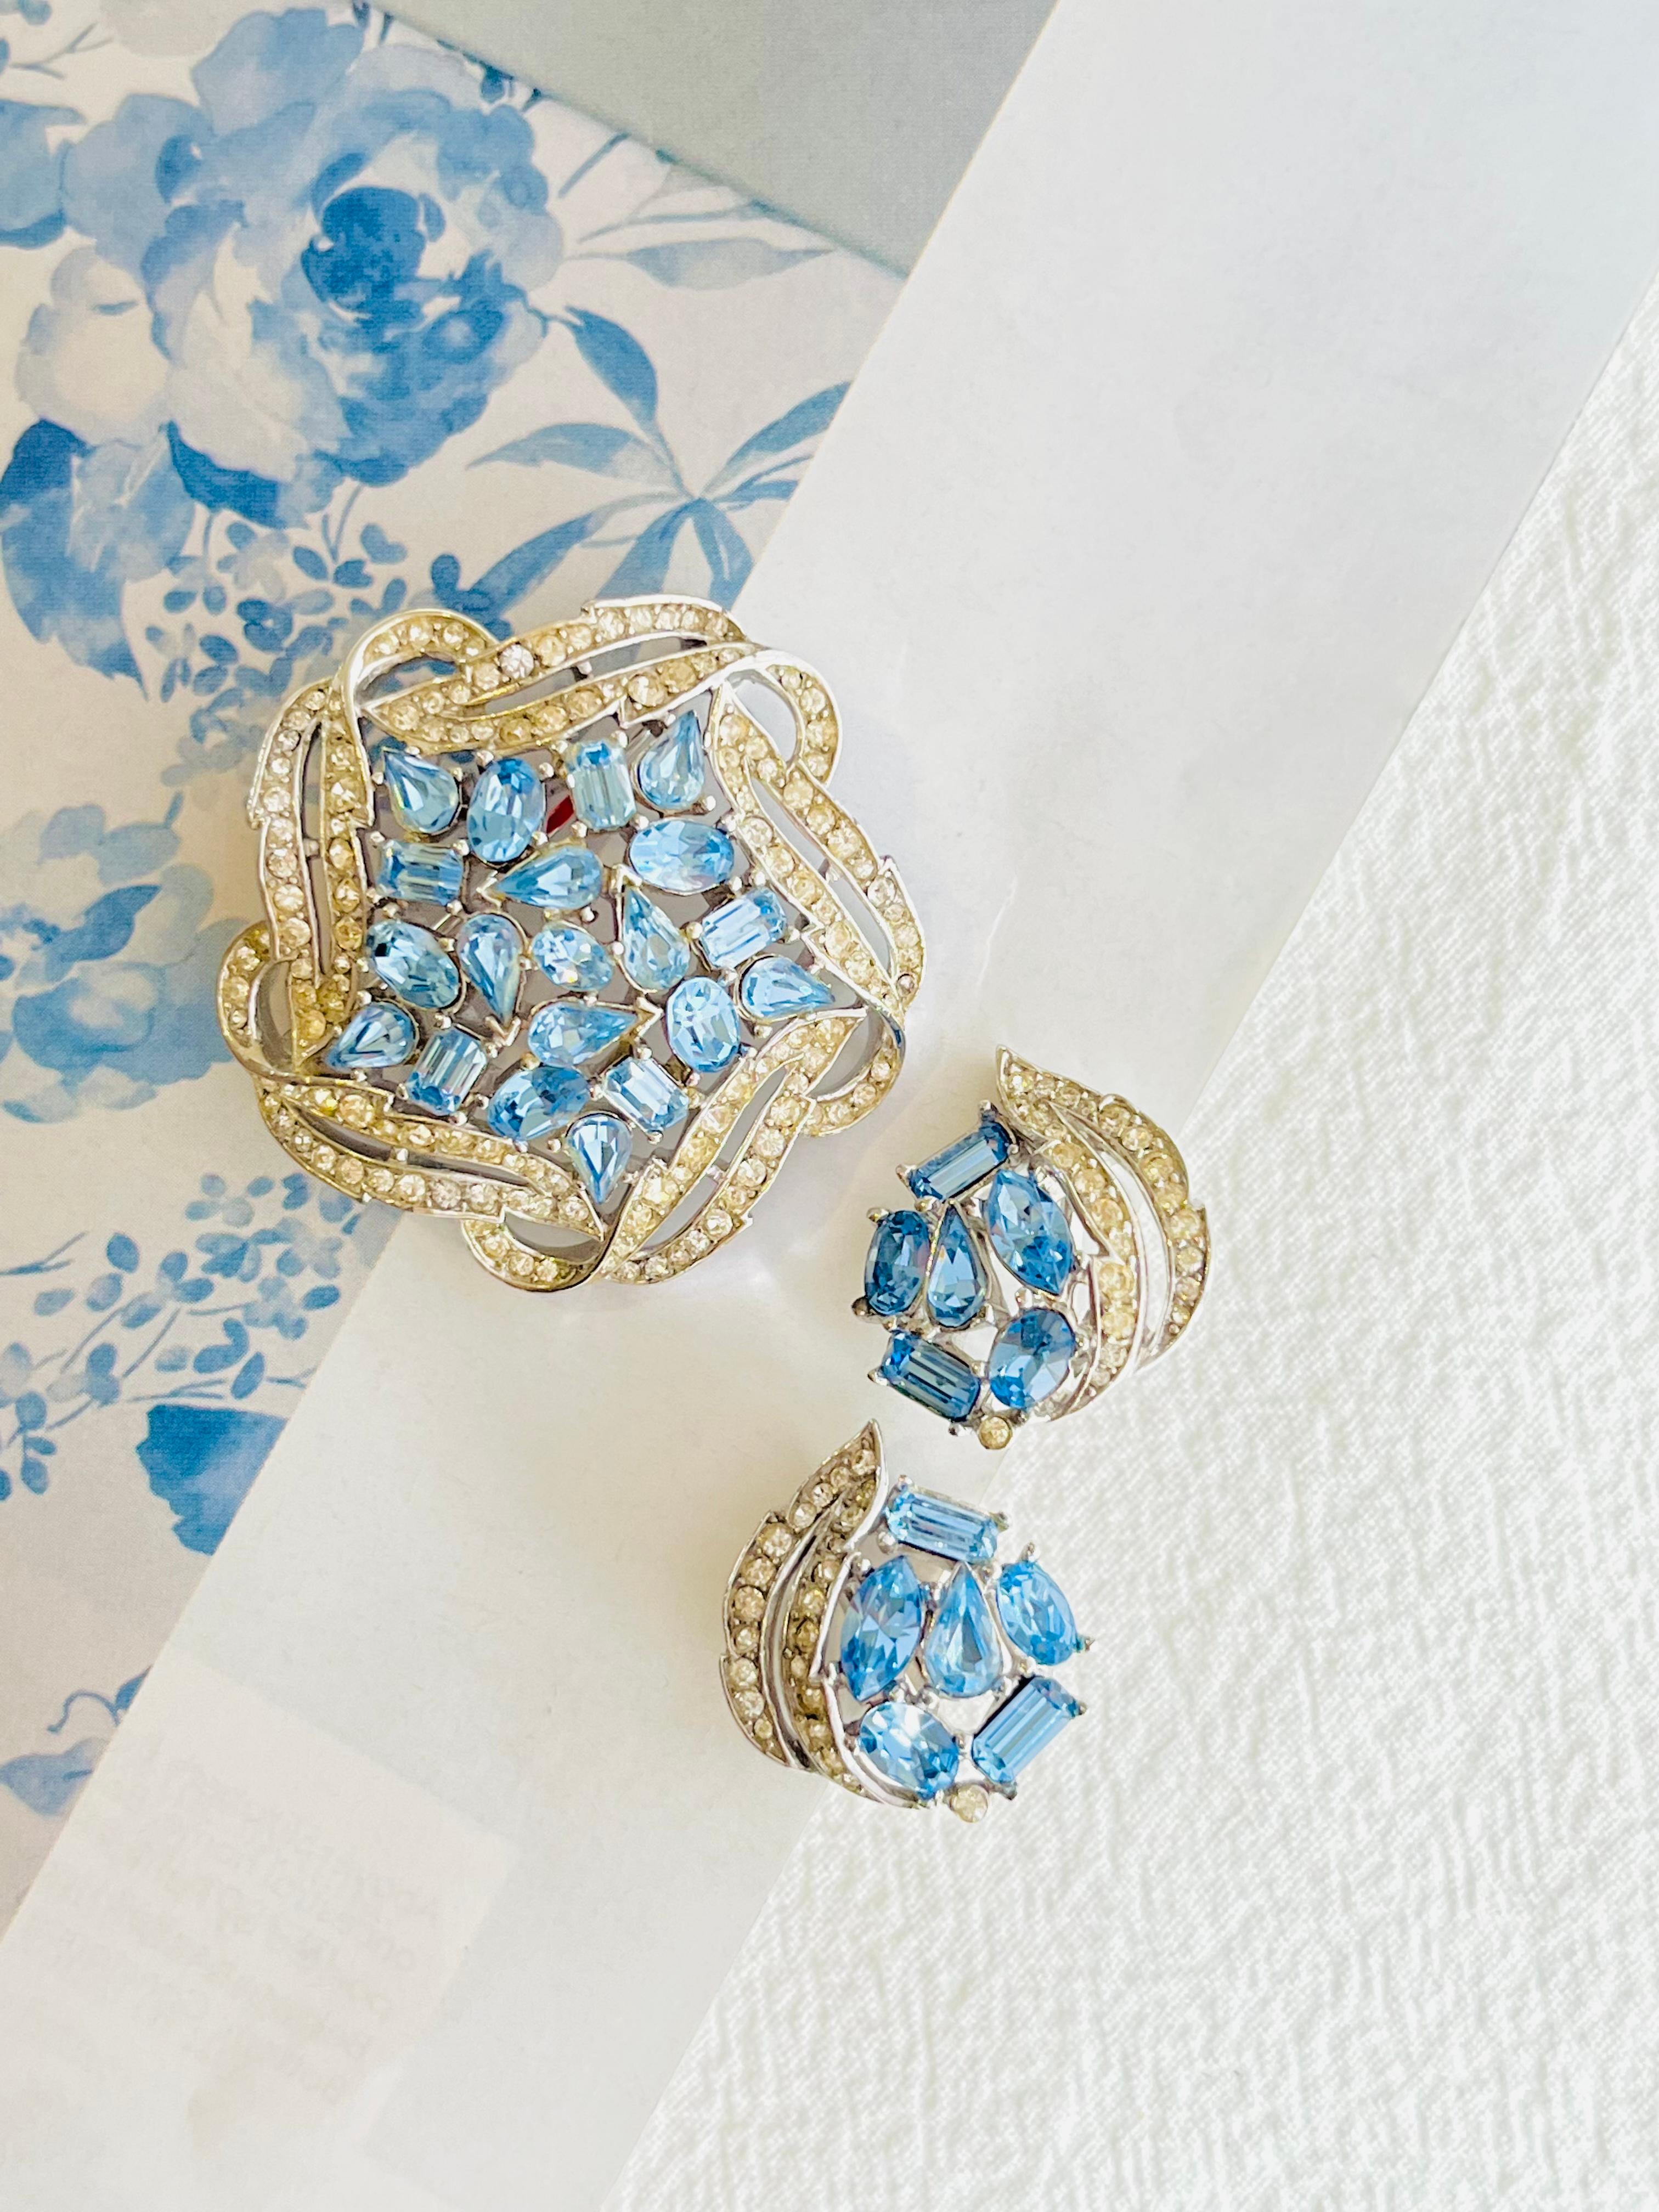 Artist Crown Trifari Vintage 1950s Sky Blue Crystals Jewellery Set Earrings Brooch For Sale